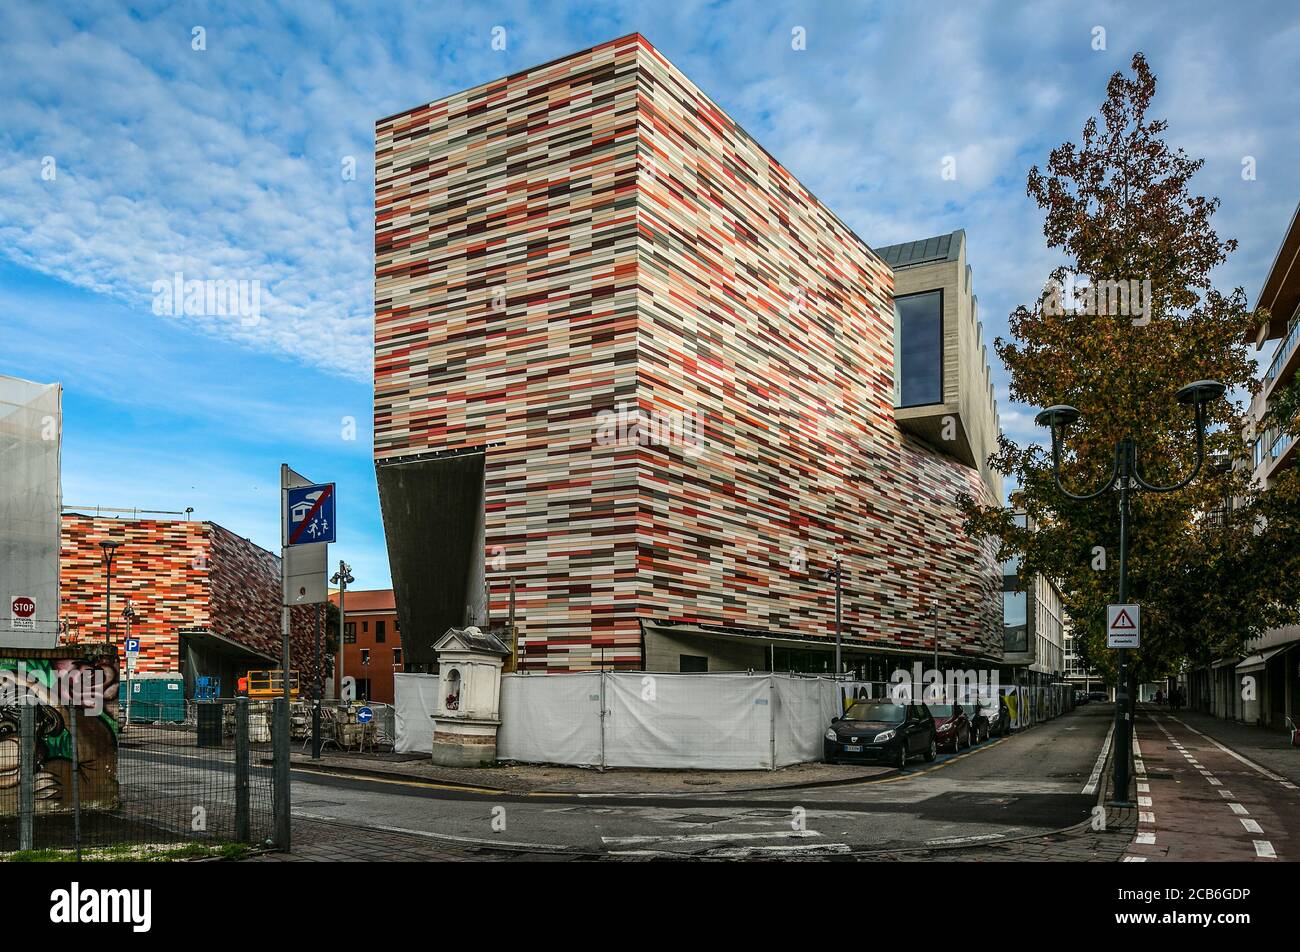 Mestre bei Venedig M9 Museum für die Geschichte des 20. Jahrhunderts von Sauerbruch Hutton vollendet 2018, Fassade mit farbigen Keramikkacheln Stock Photo